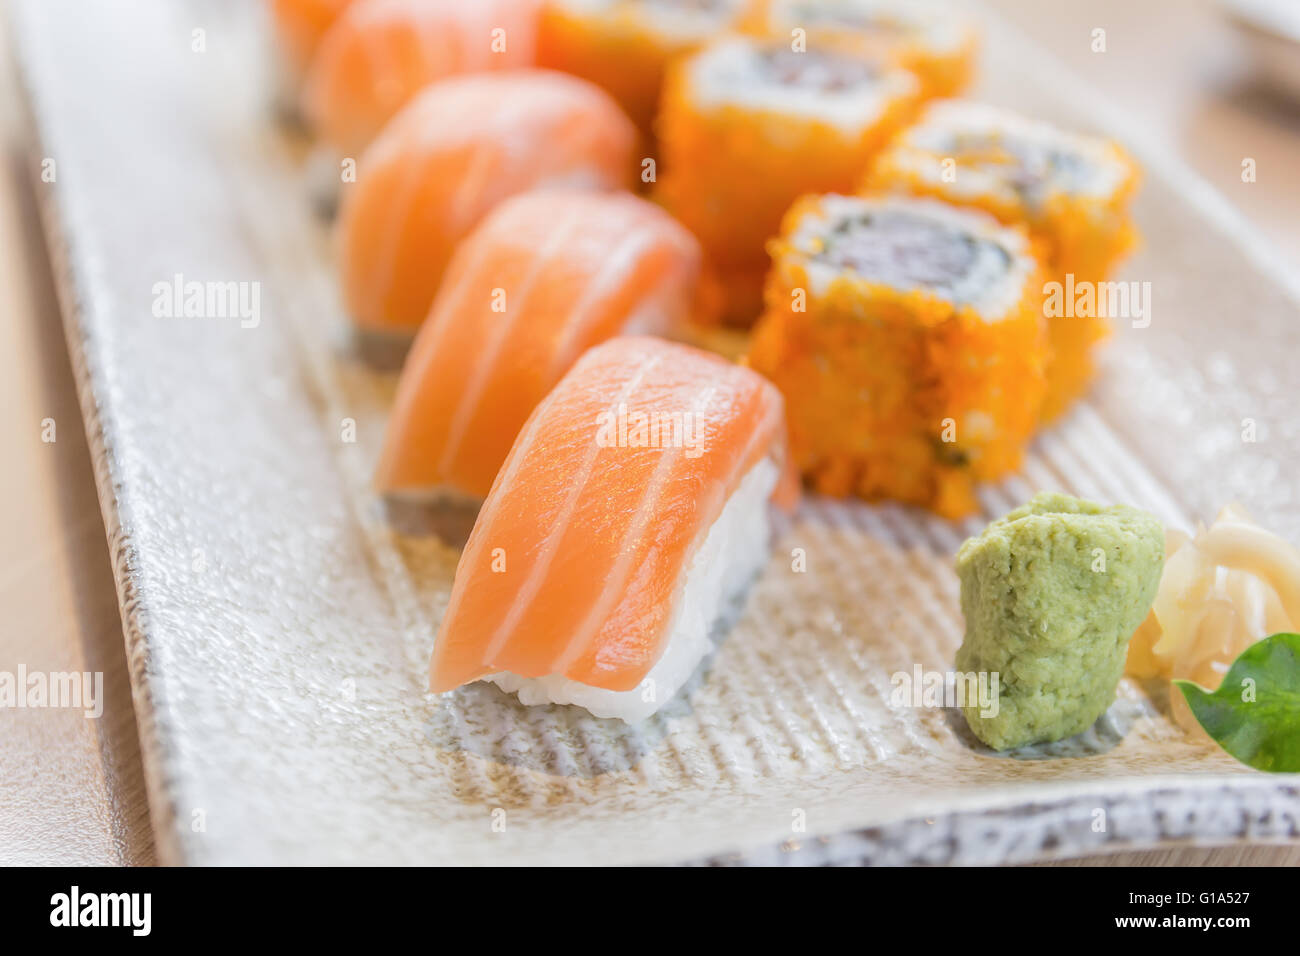 Sushis faits maison avec du saumon, du fromage à la crème Philadelphia, omelette Japonaise, concombre et wasabi. selective focus Banque D'Images